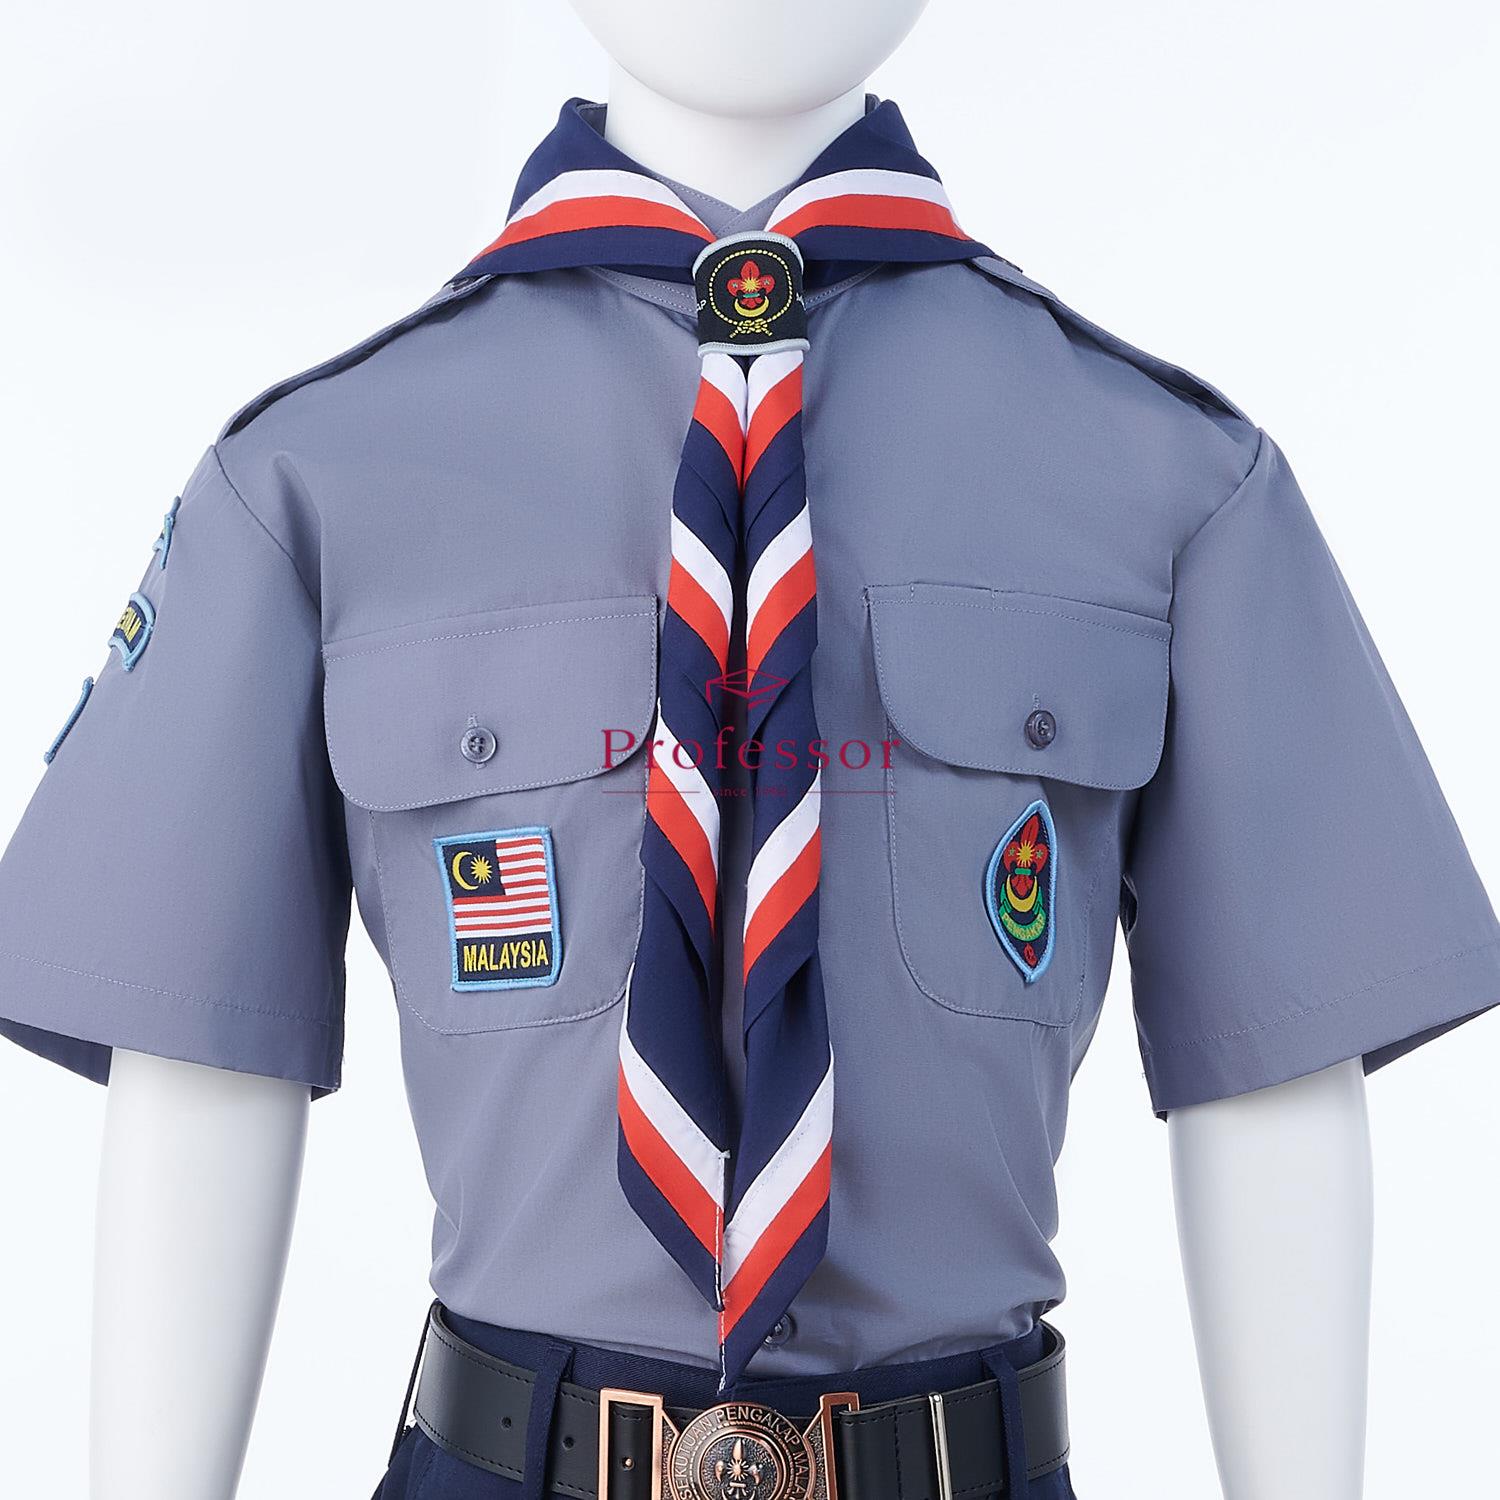 Baju uniform pengakap